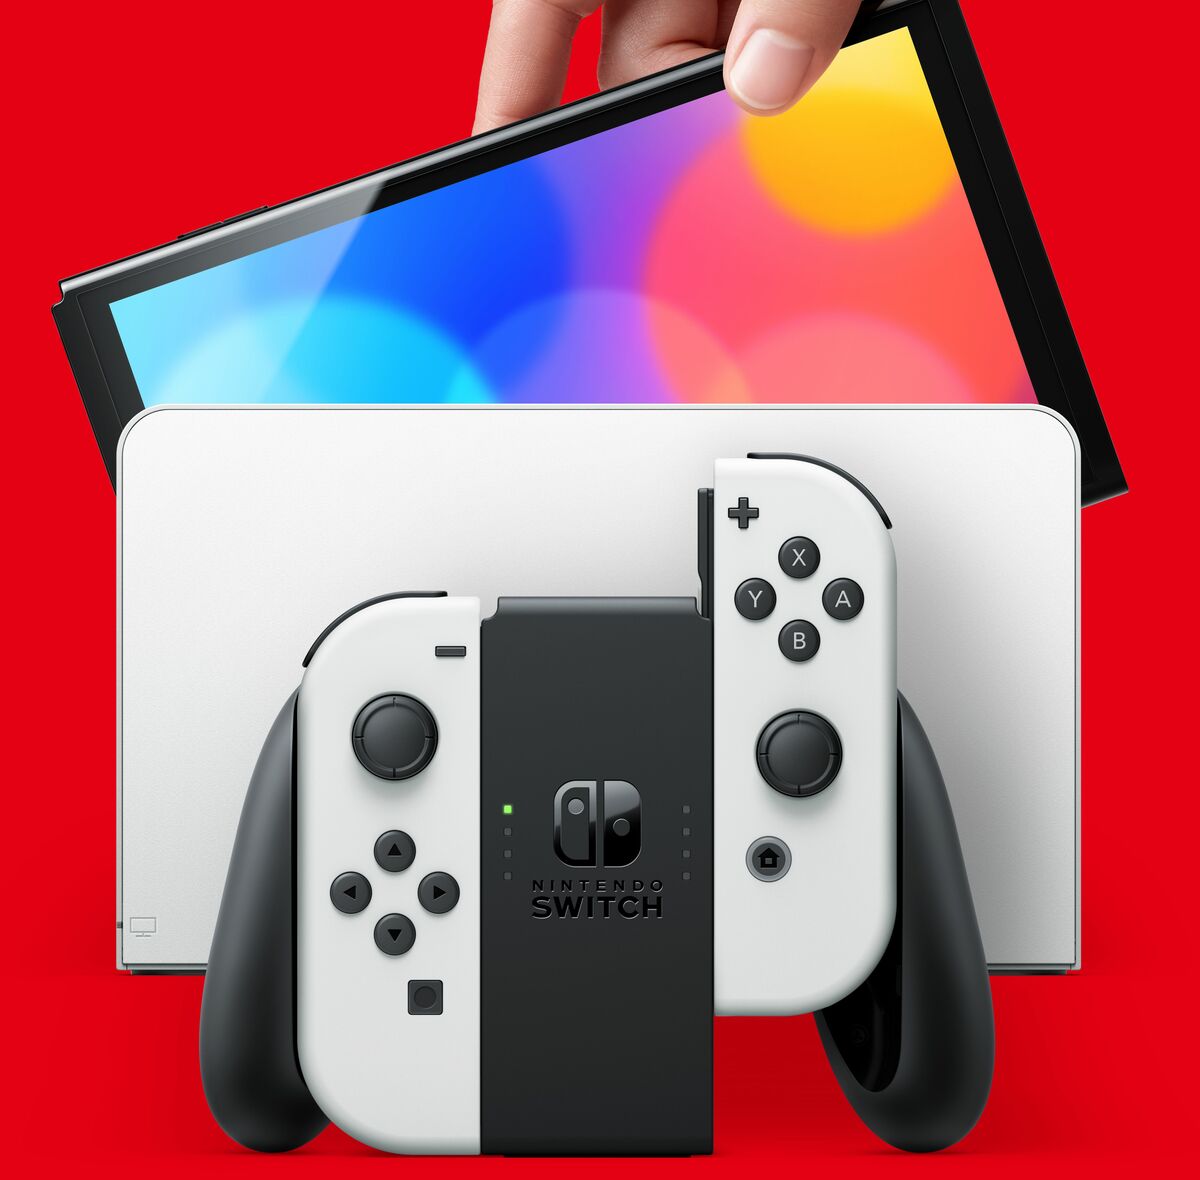 【新品未開封】任天堂 Nintendo Switch 12台【印なし】